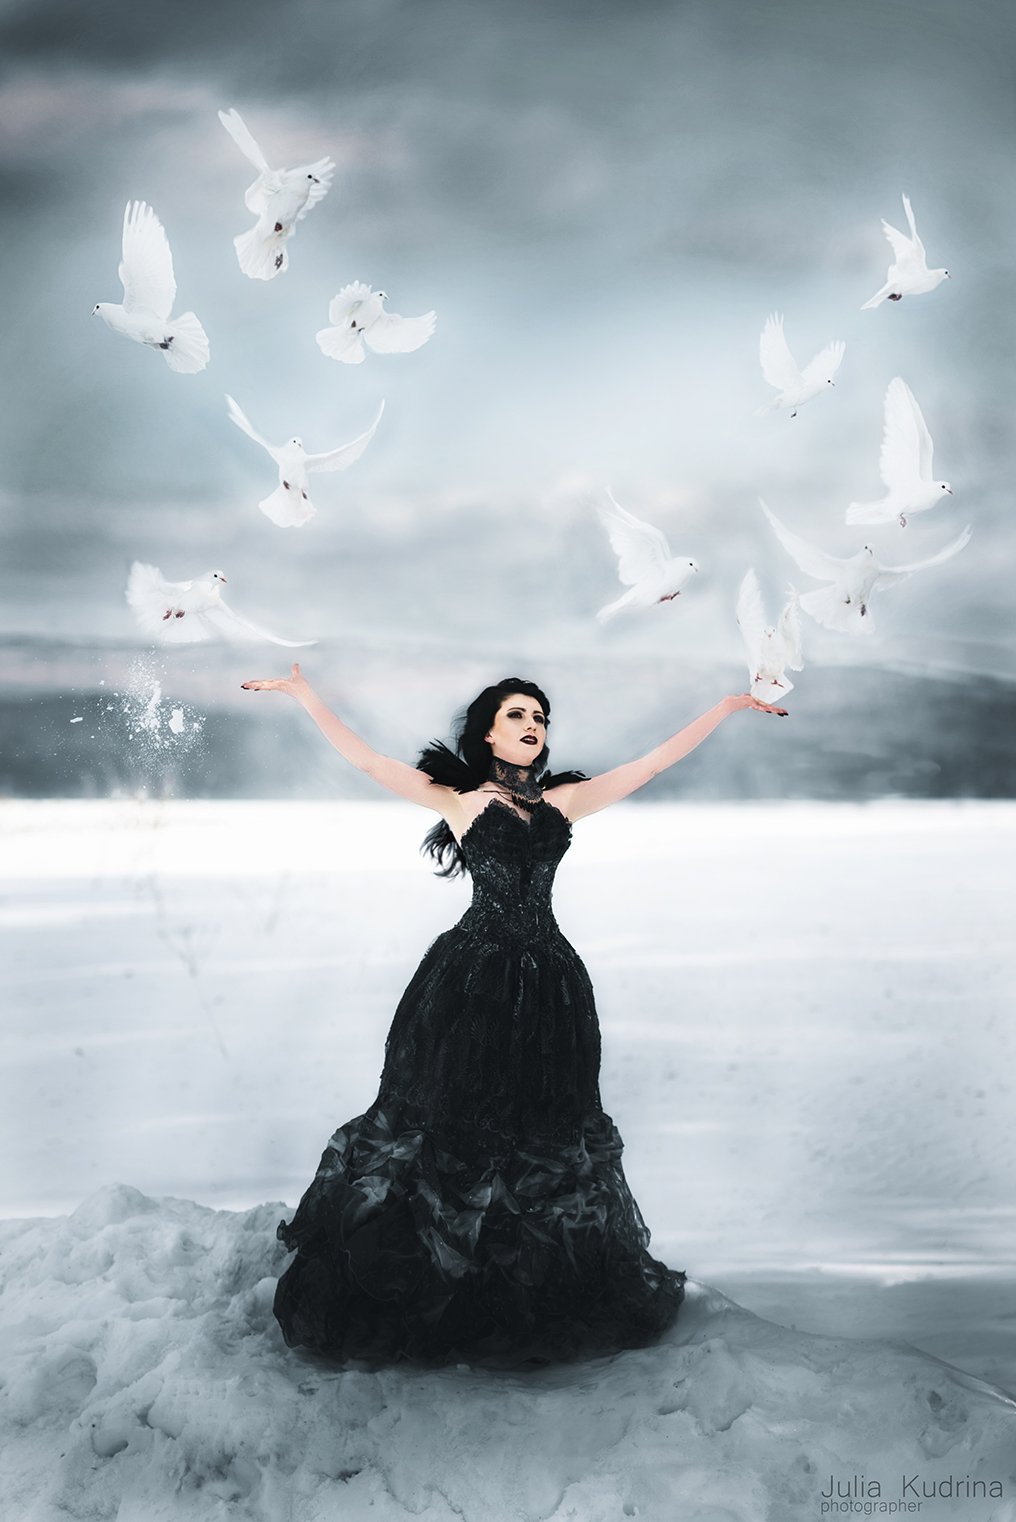 голуби белые голуби птицы зима девушка черное платье сказка, Юлия Кудрина